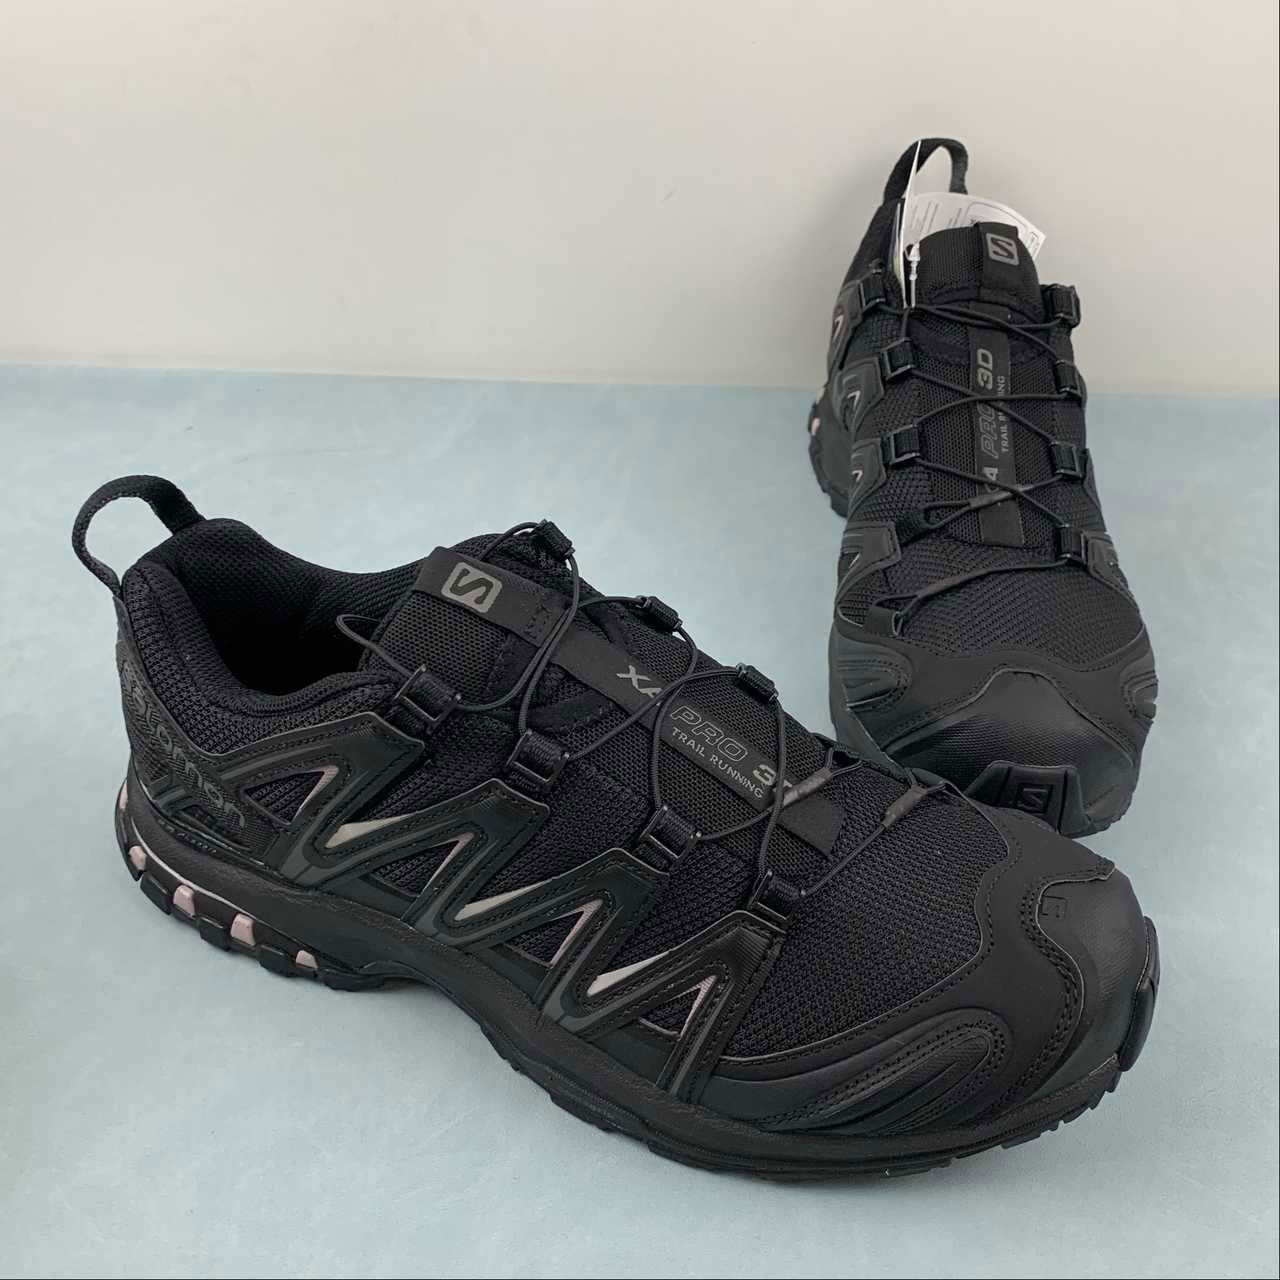 Salomon XA PRO-3D Retro Functional Fashion casual running shoes 412551